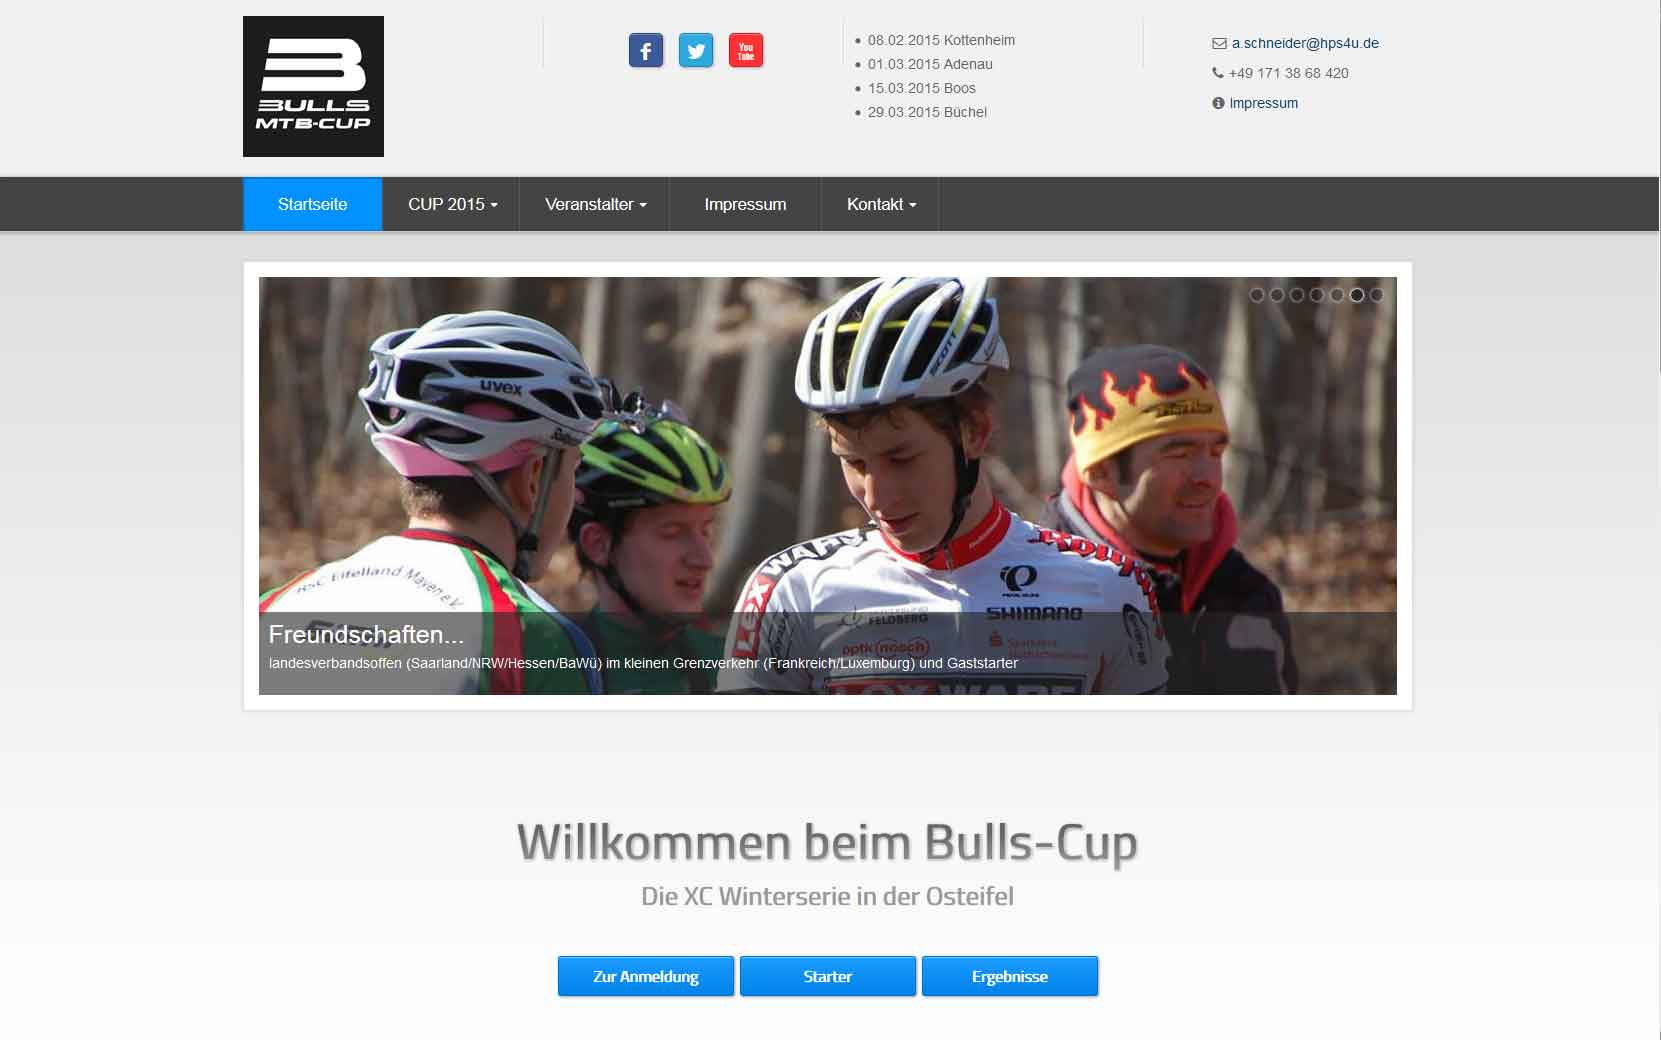 Bulls-Cup